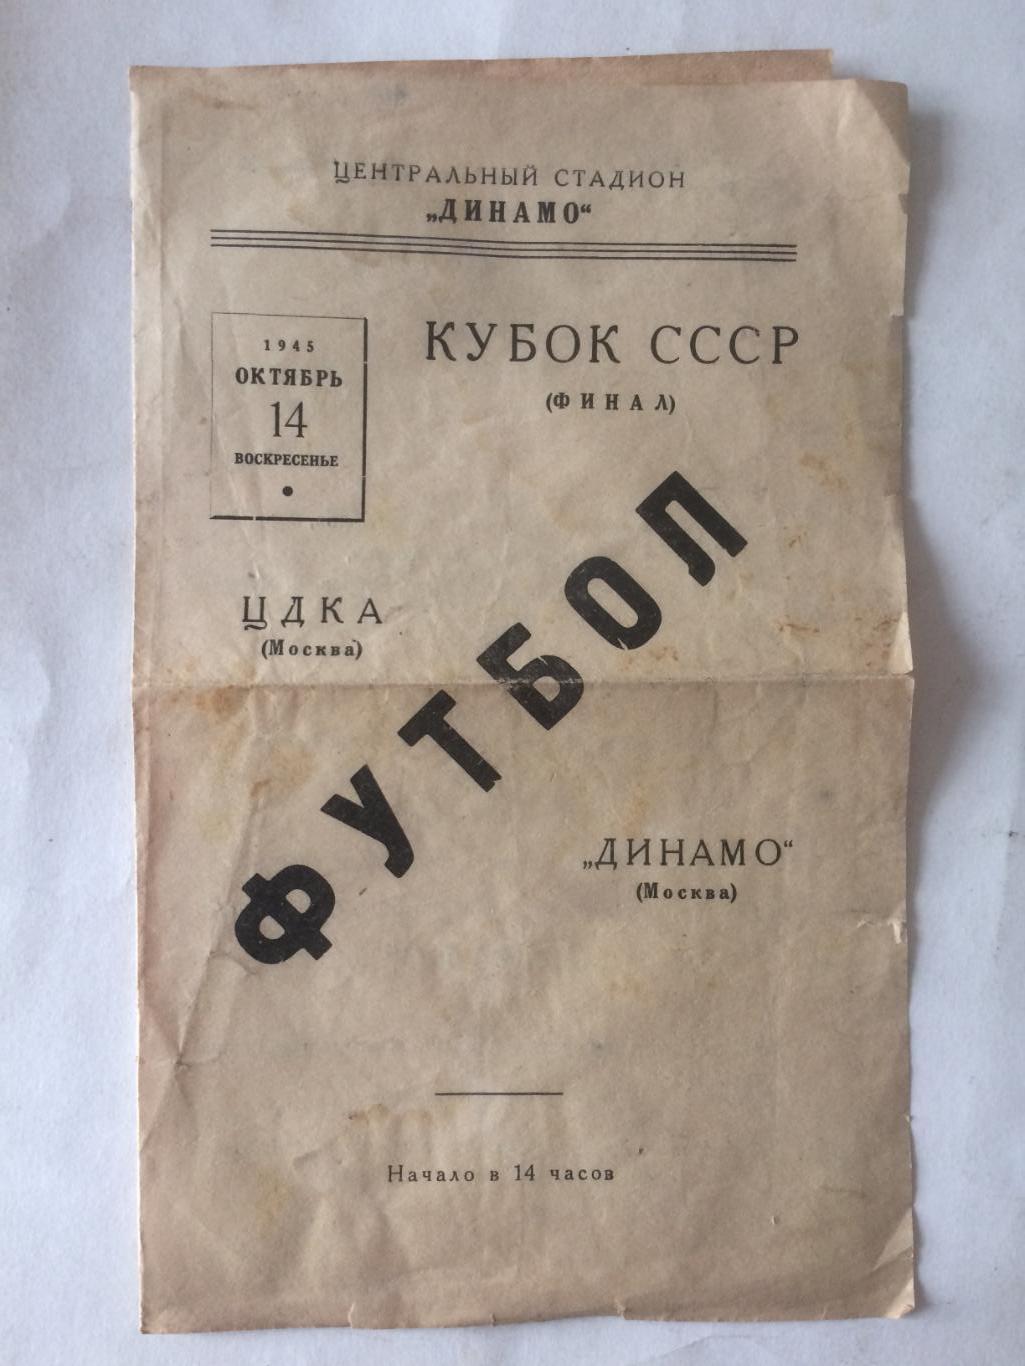 Кубок СССР Финал ЦДКА(Москва)-Динамо Москва 14.10.1945